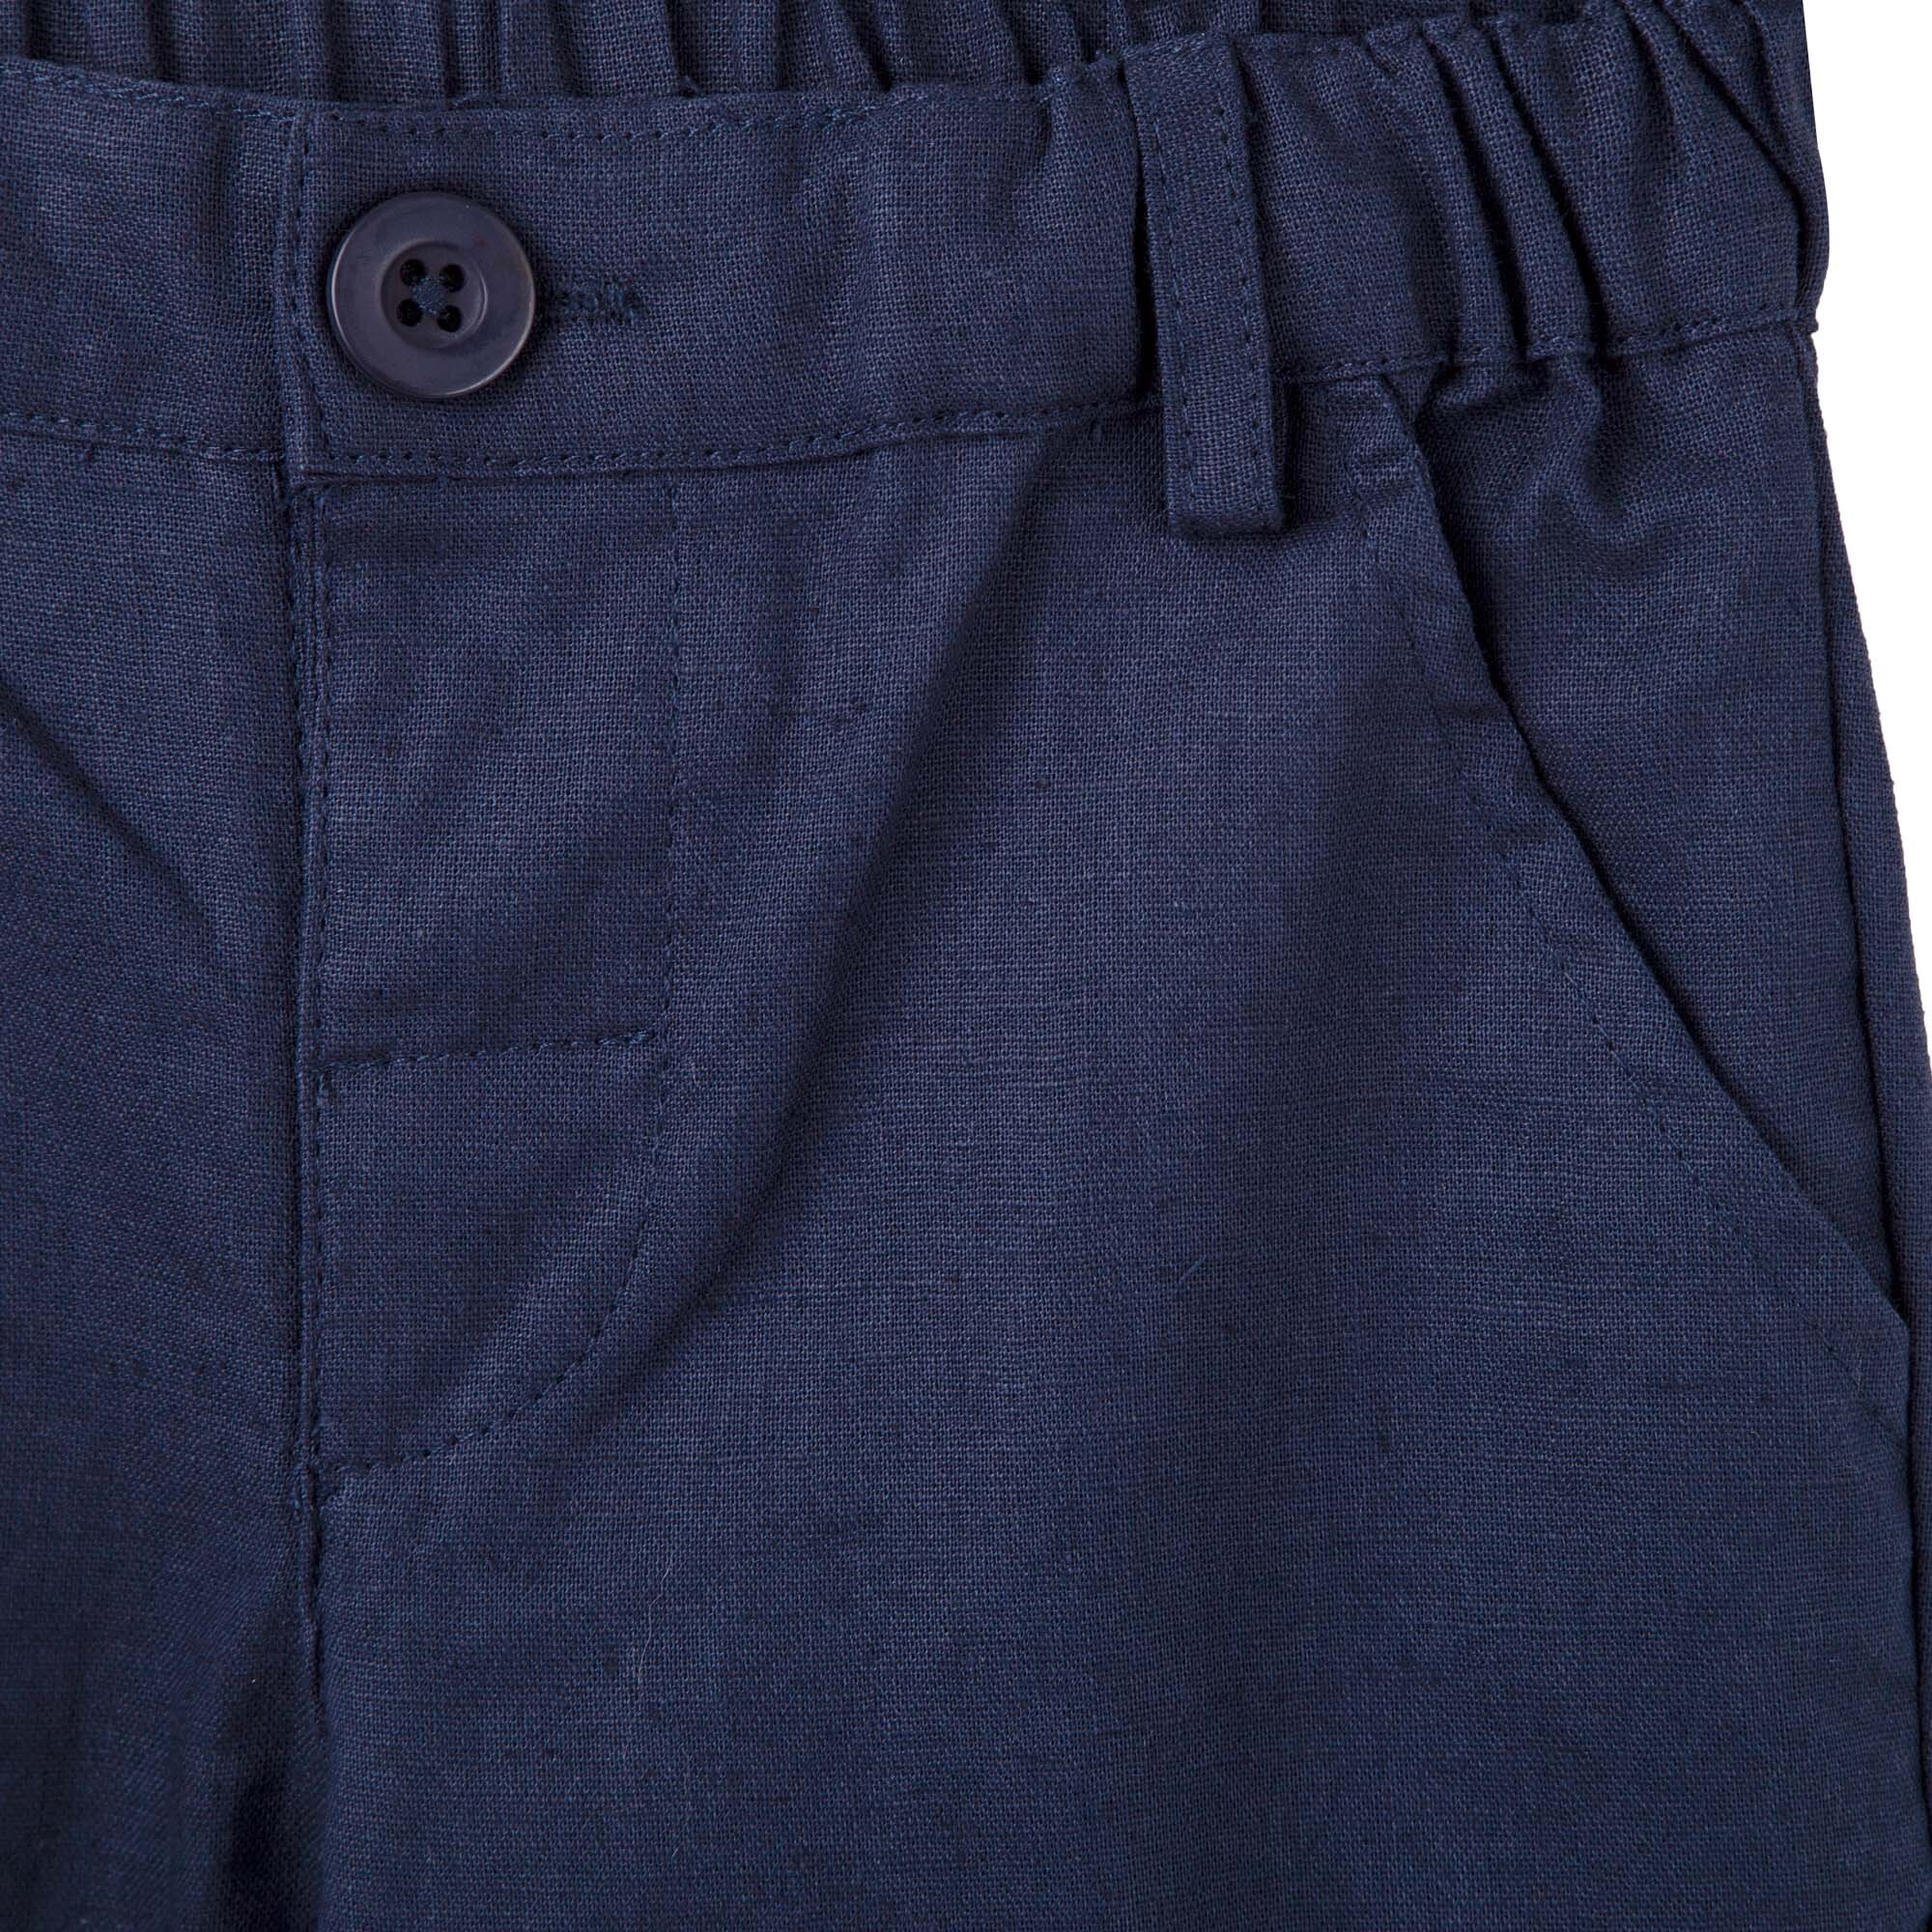 Designer Kidz Finley Linen Pants - Navy - CLOTHING-BABY-Baby Special ...